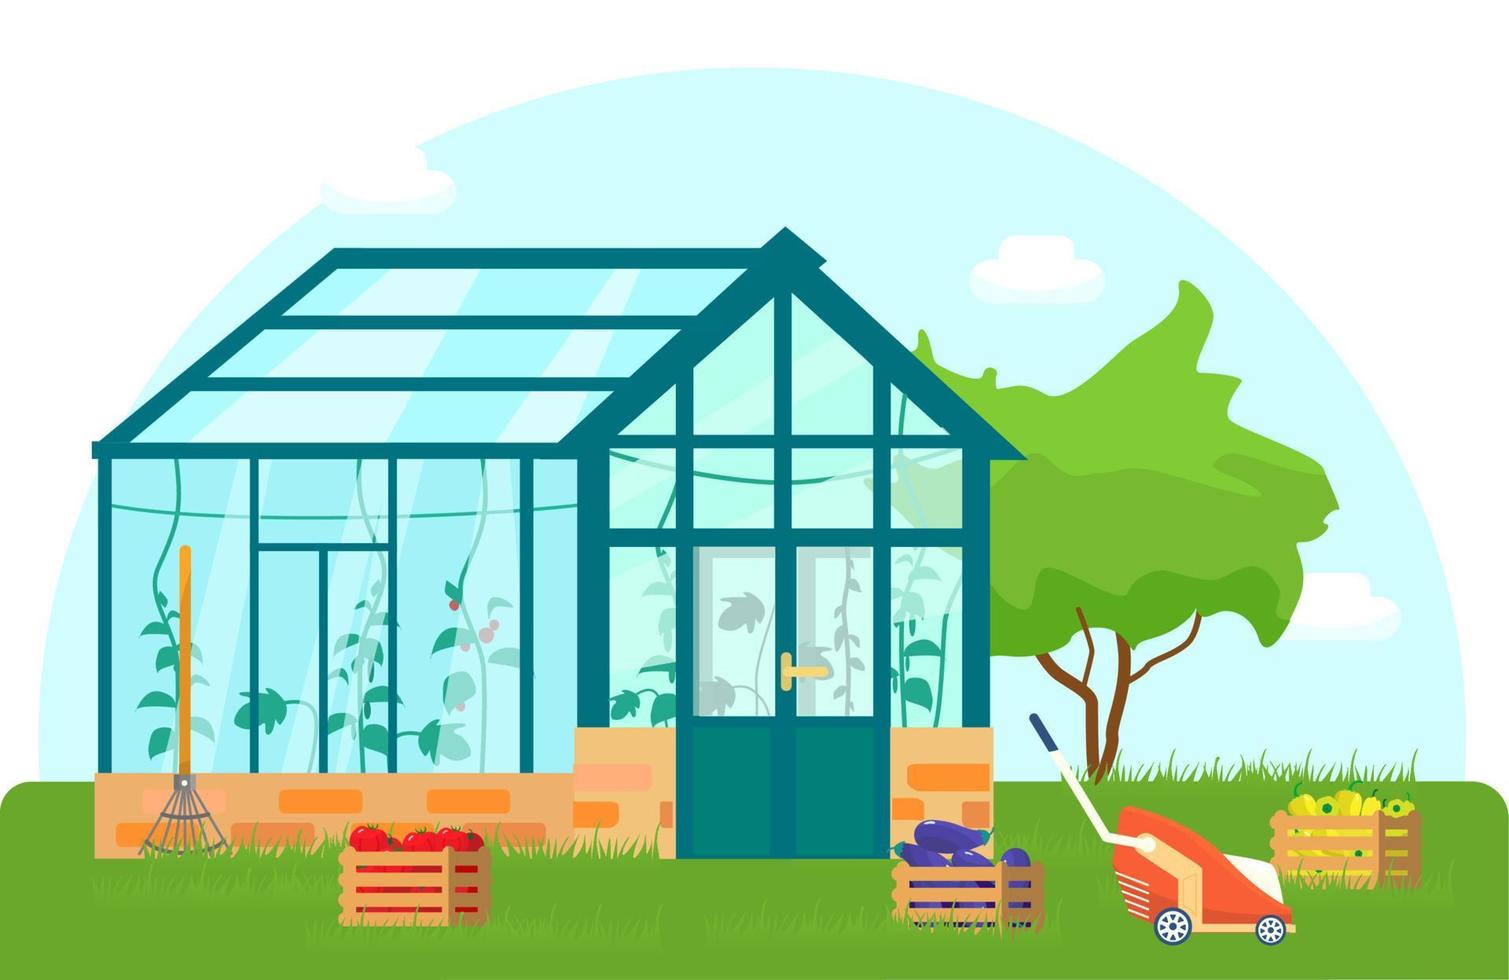 vektorillustration des gewächshauses mit verschiedenen pflanzen im inneren im flachen stil. Glashaus mit Tomaten- und Gurkenpflanzen. Holzkisten mit Gemüse. vektor